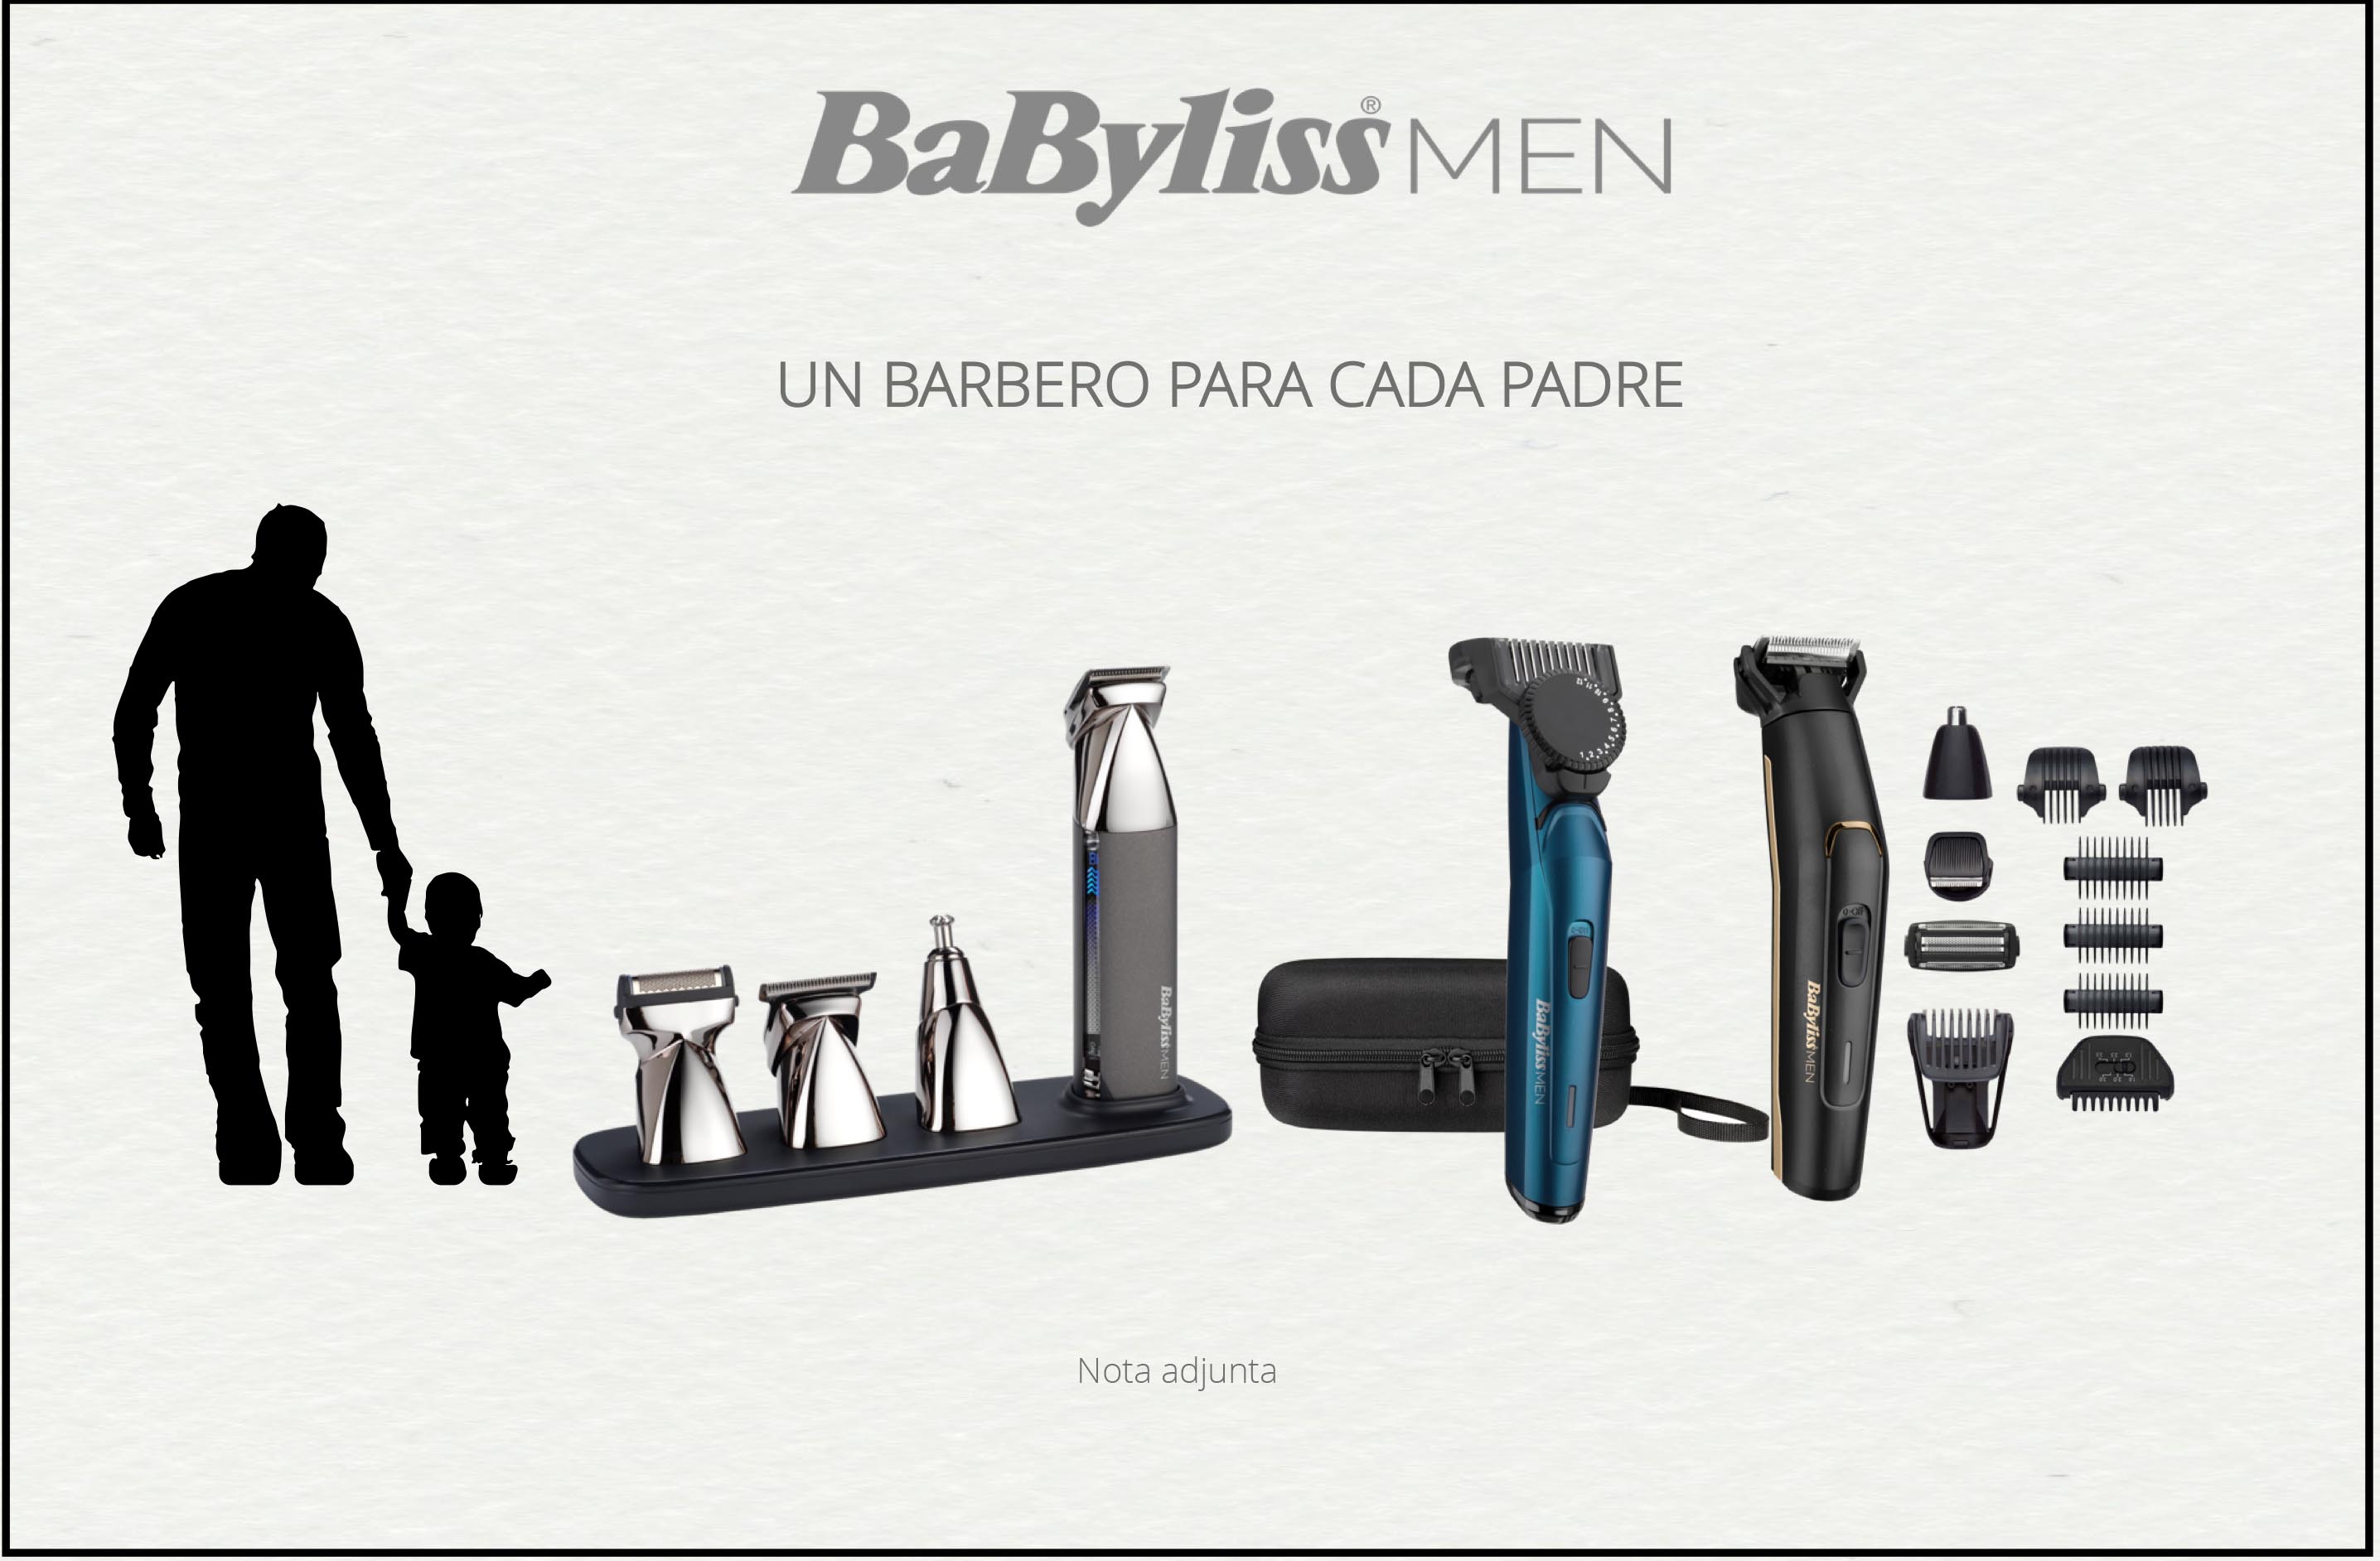 Babyliss tiene un barbero para cada padre